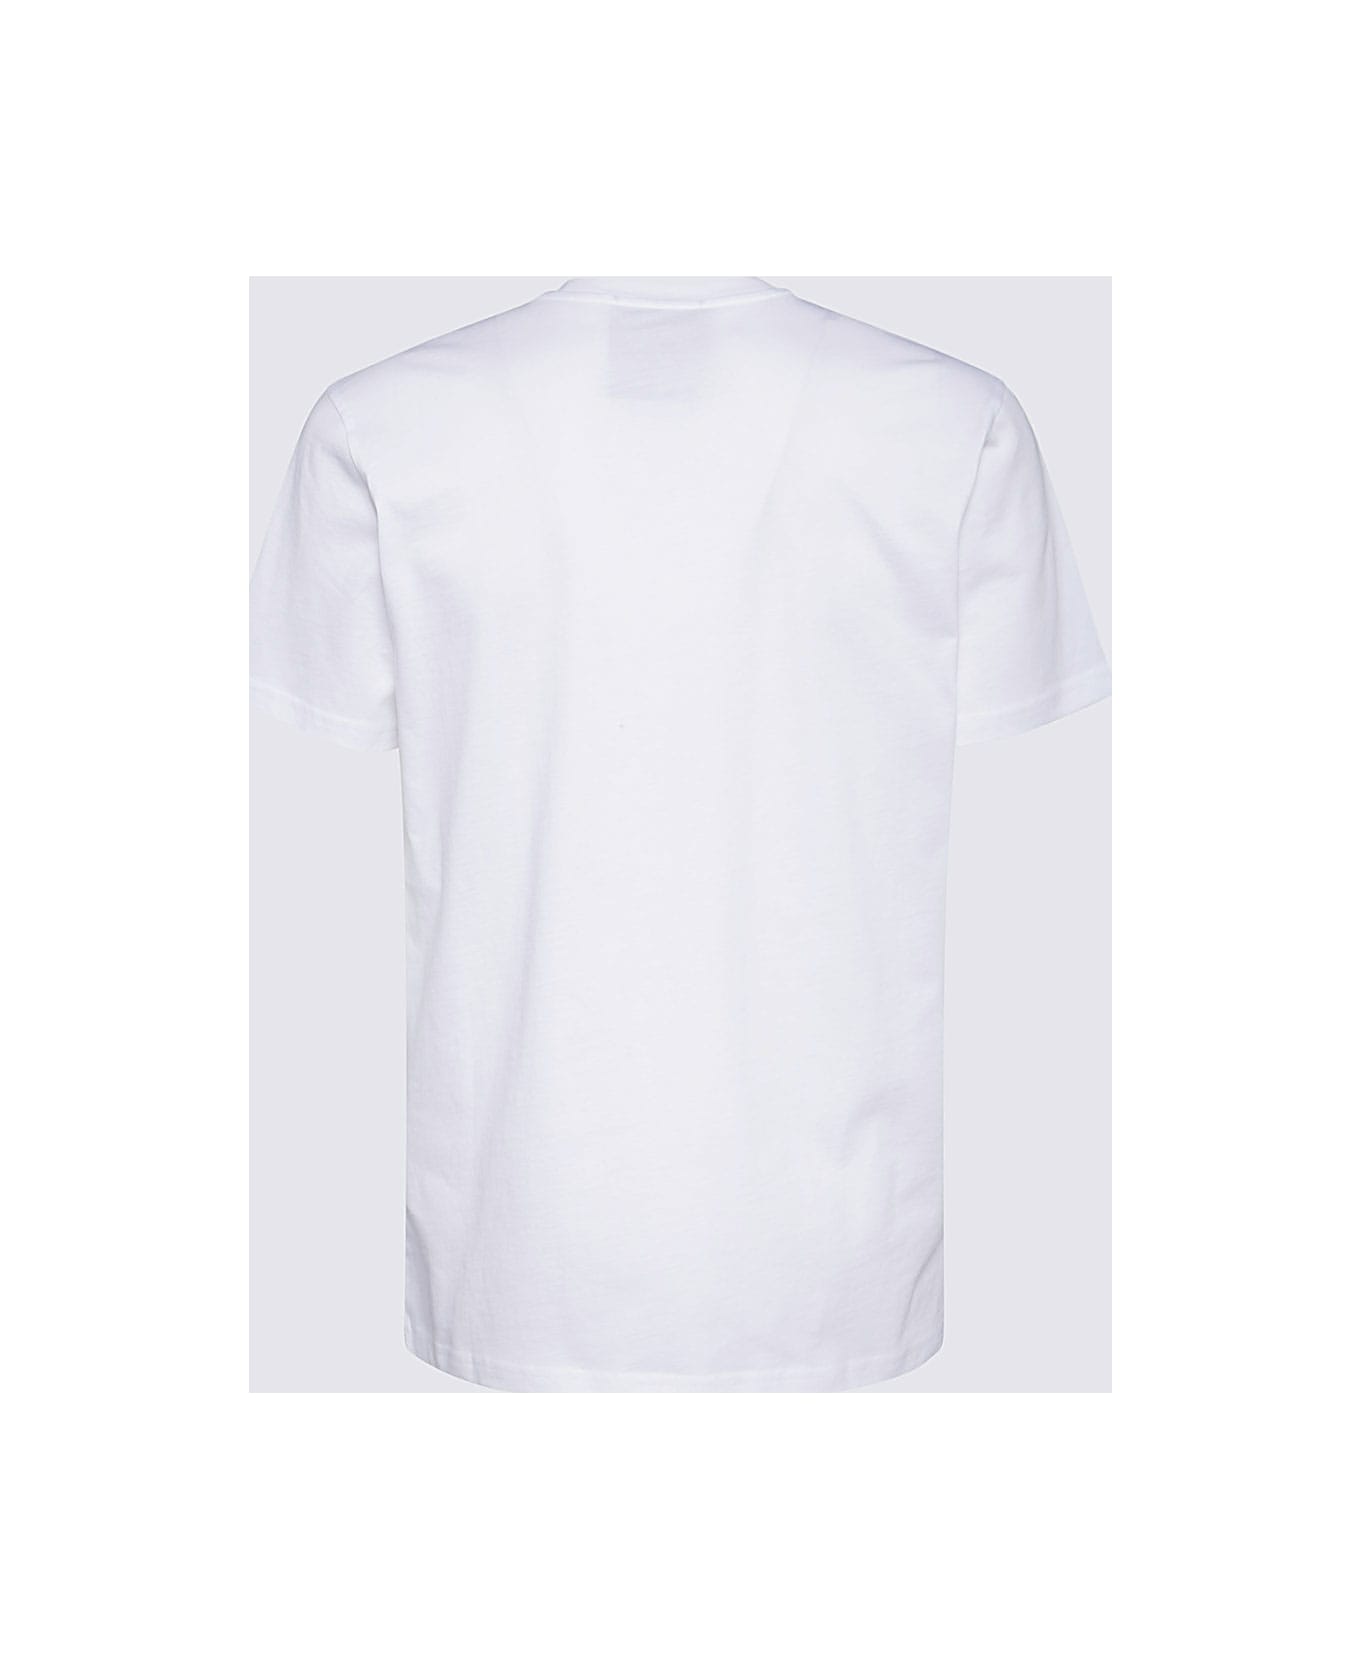 Moschino White Cotton T-shirt - Bianco